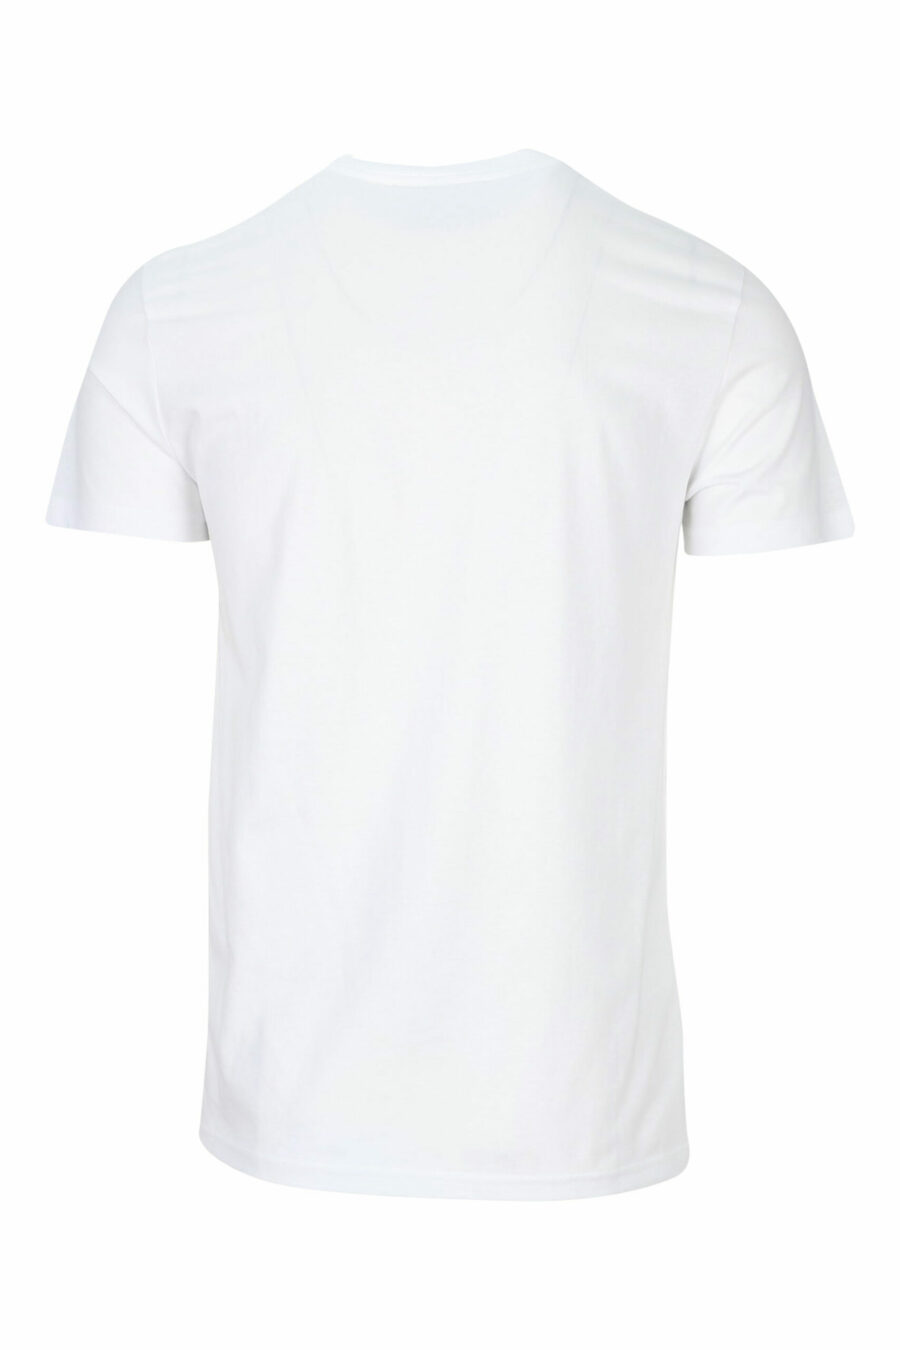 Camiseta blanca con maxilogo clásico dorado brillante - 8052019456738 1 scaled